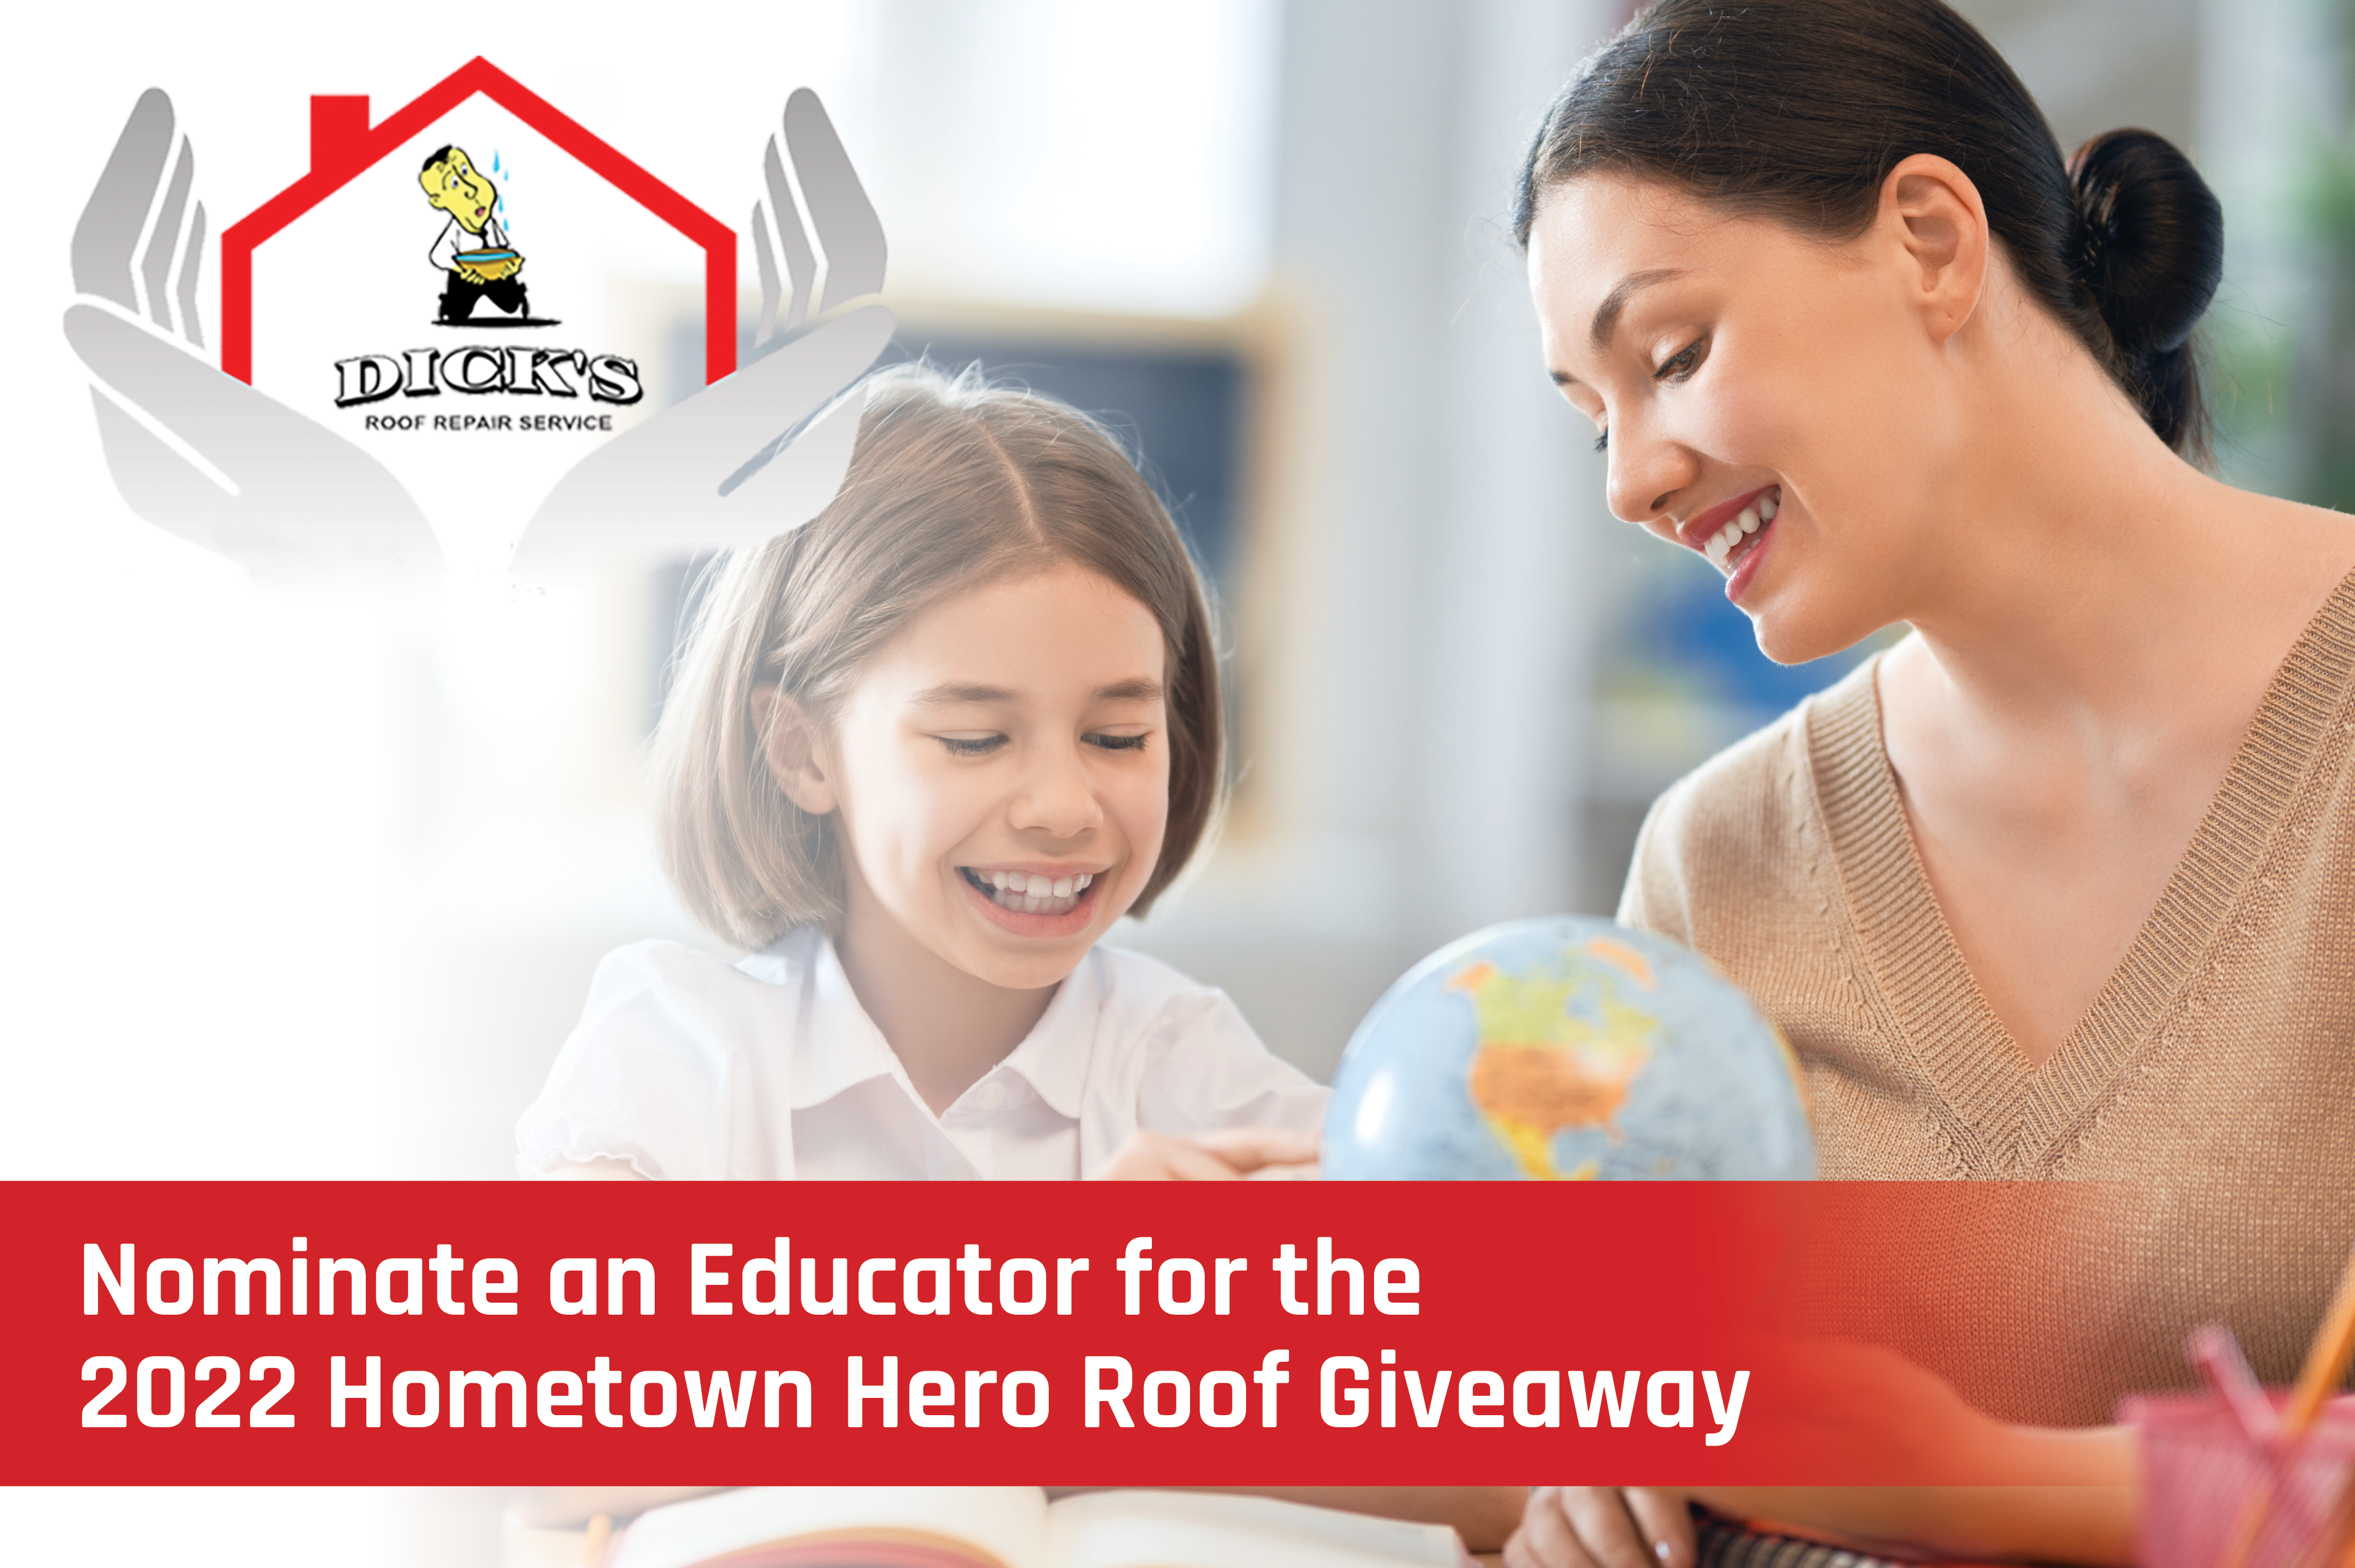 Education Hero | Dick's Roof Repair